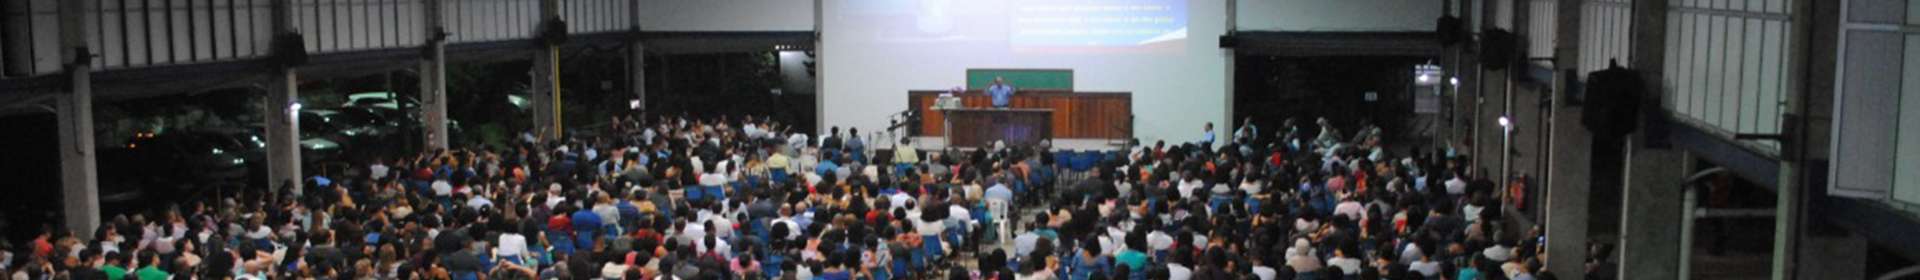 Seminário e Culto de evangelização no Maanaim de Salvador, BA